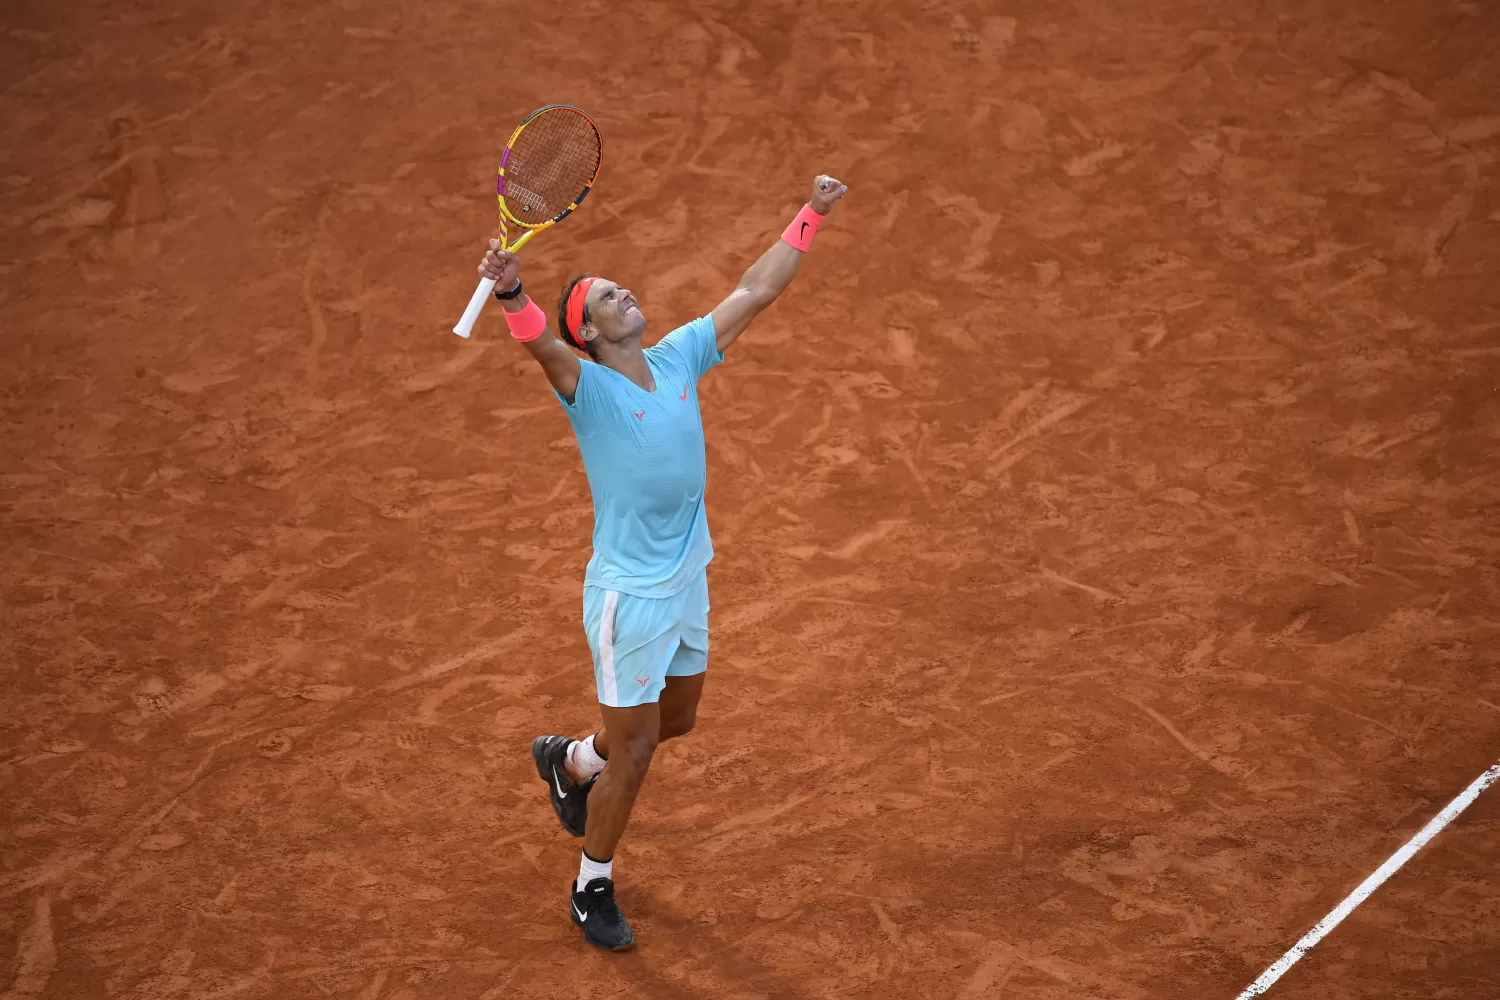 FINALISTA. El español Nadal va por otro título de Roland Garros. Foto: Twitter @rolandgarros